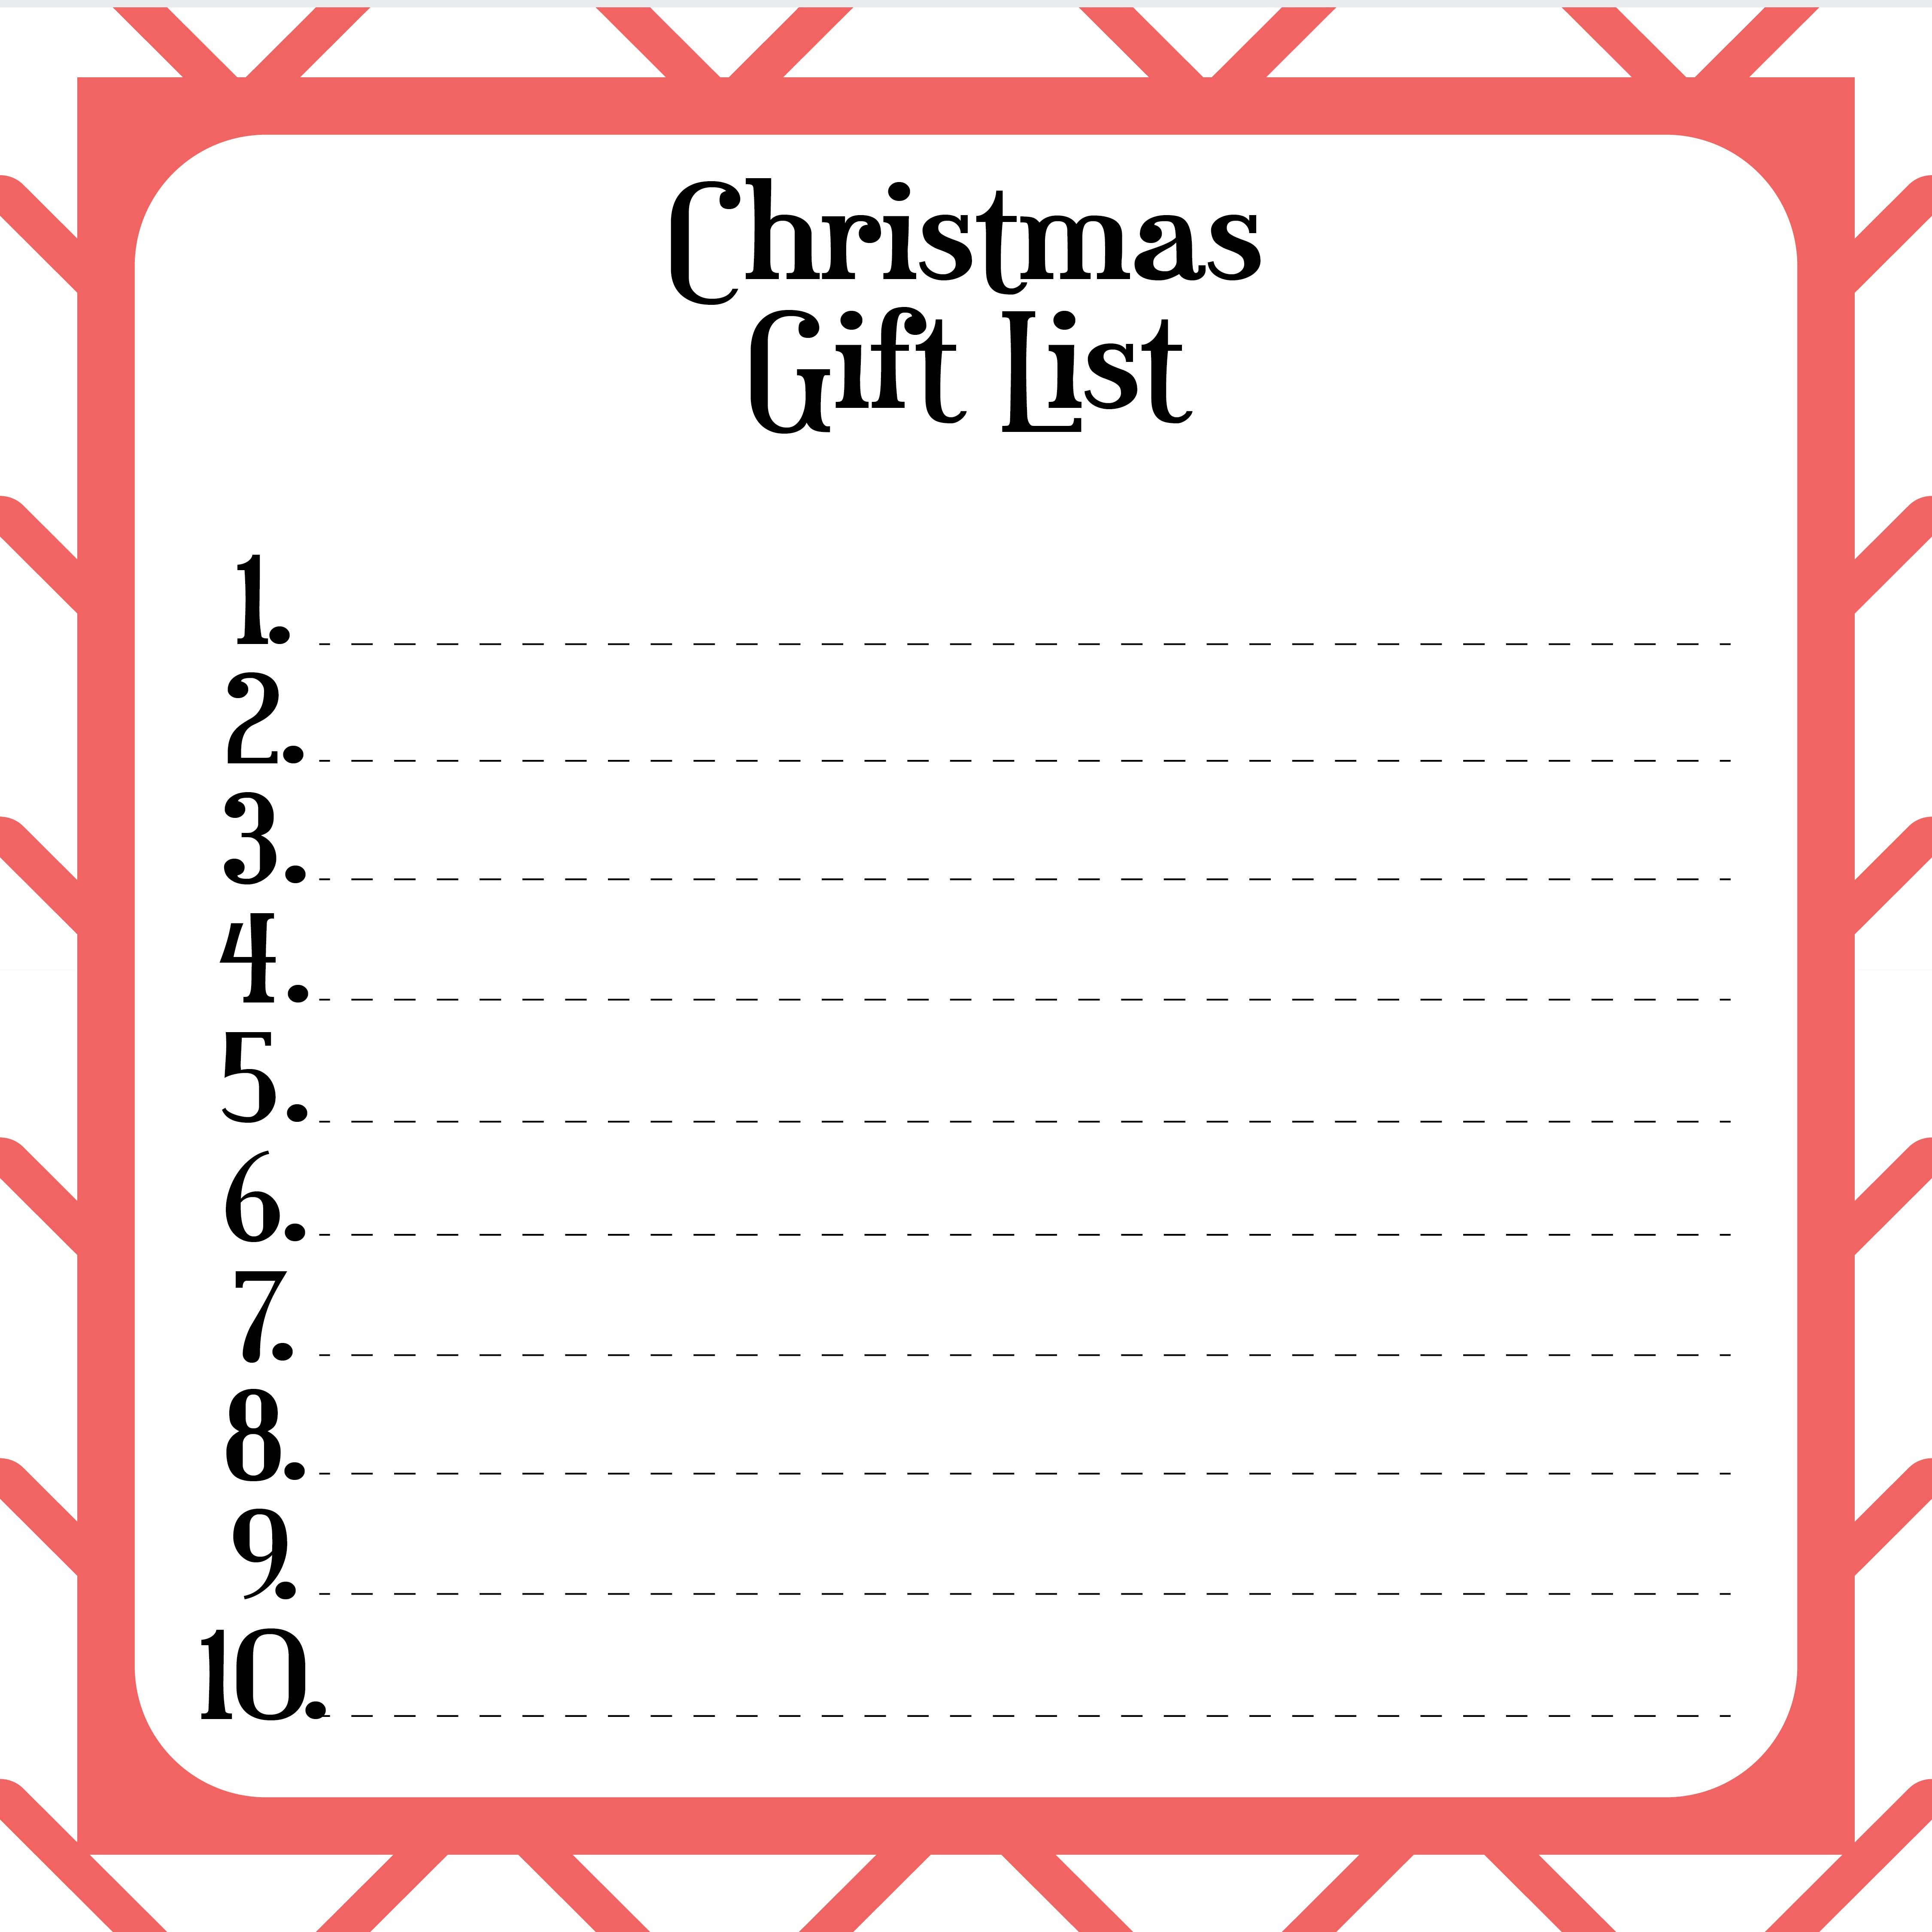 Printable Christmas Gift List Planner